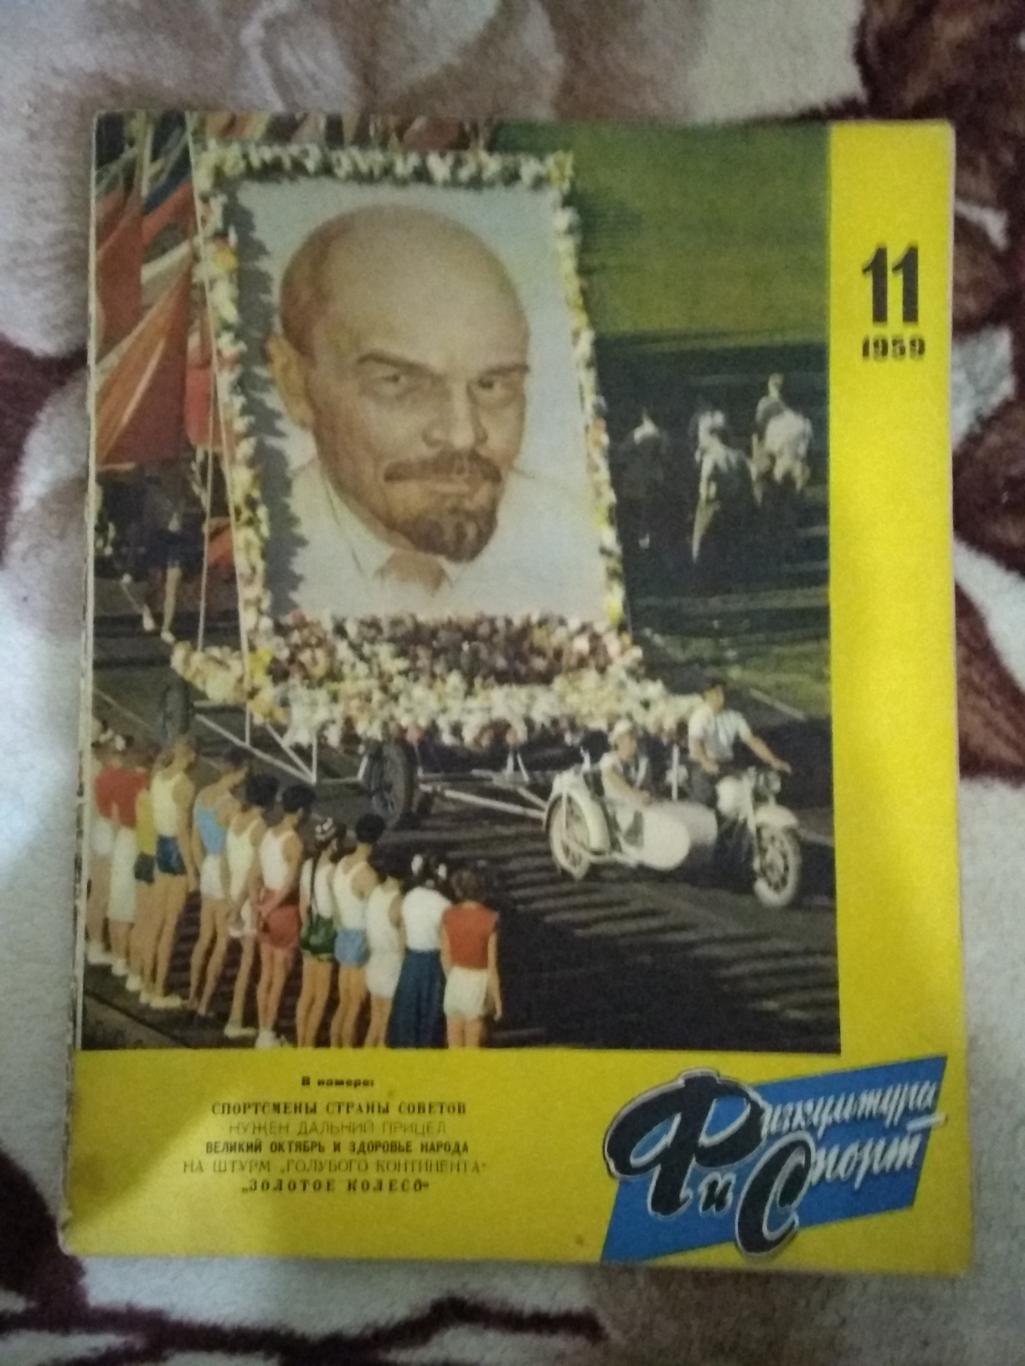 Журнал.Физкультура и спорт № 11 1959 г. (ФиС).